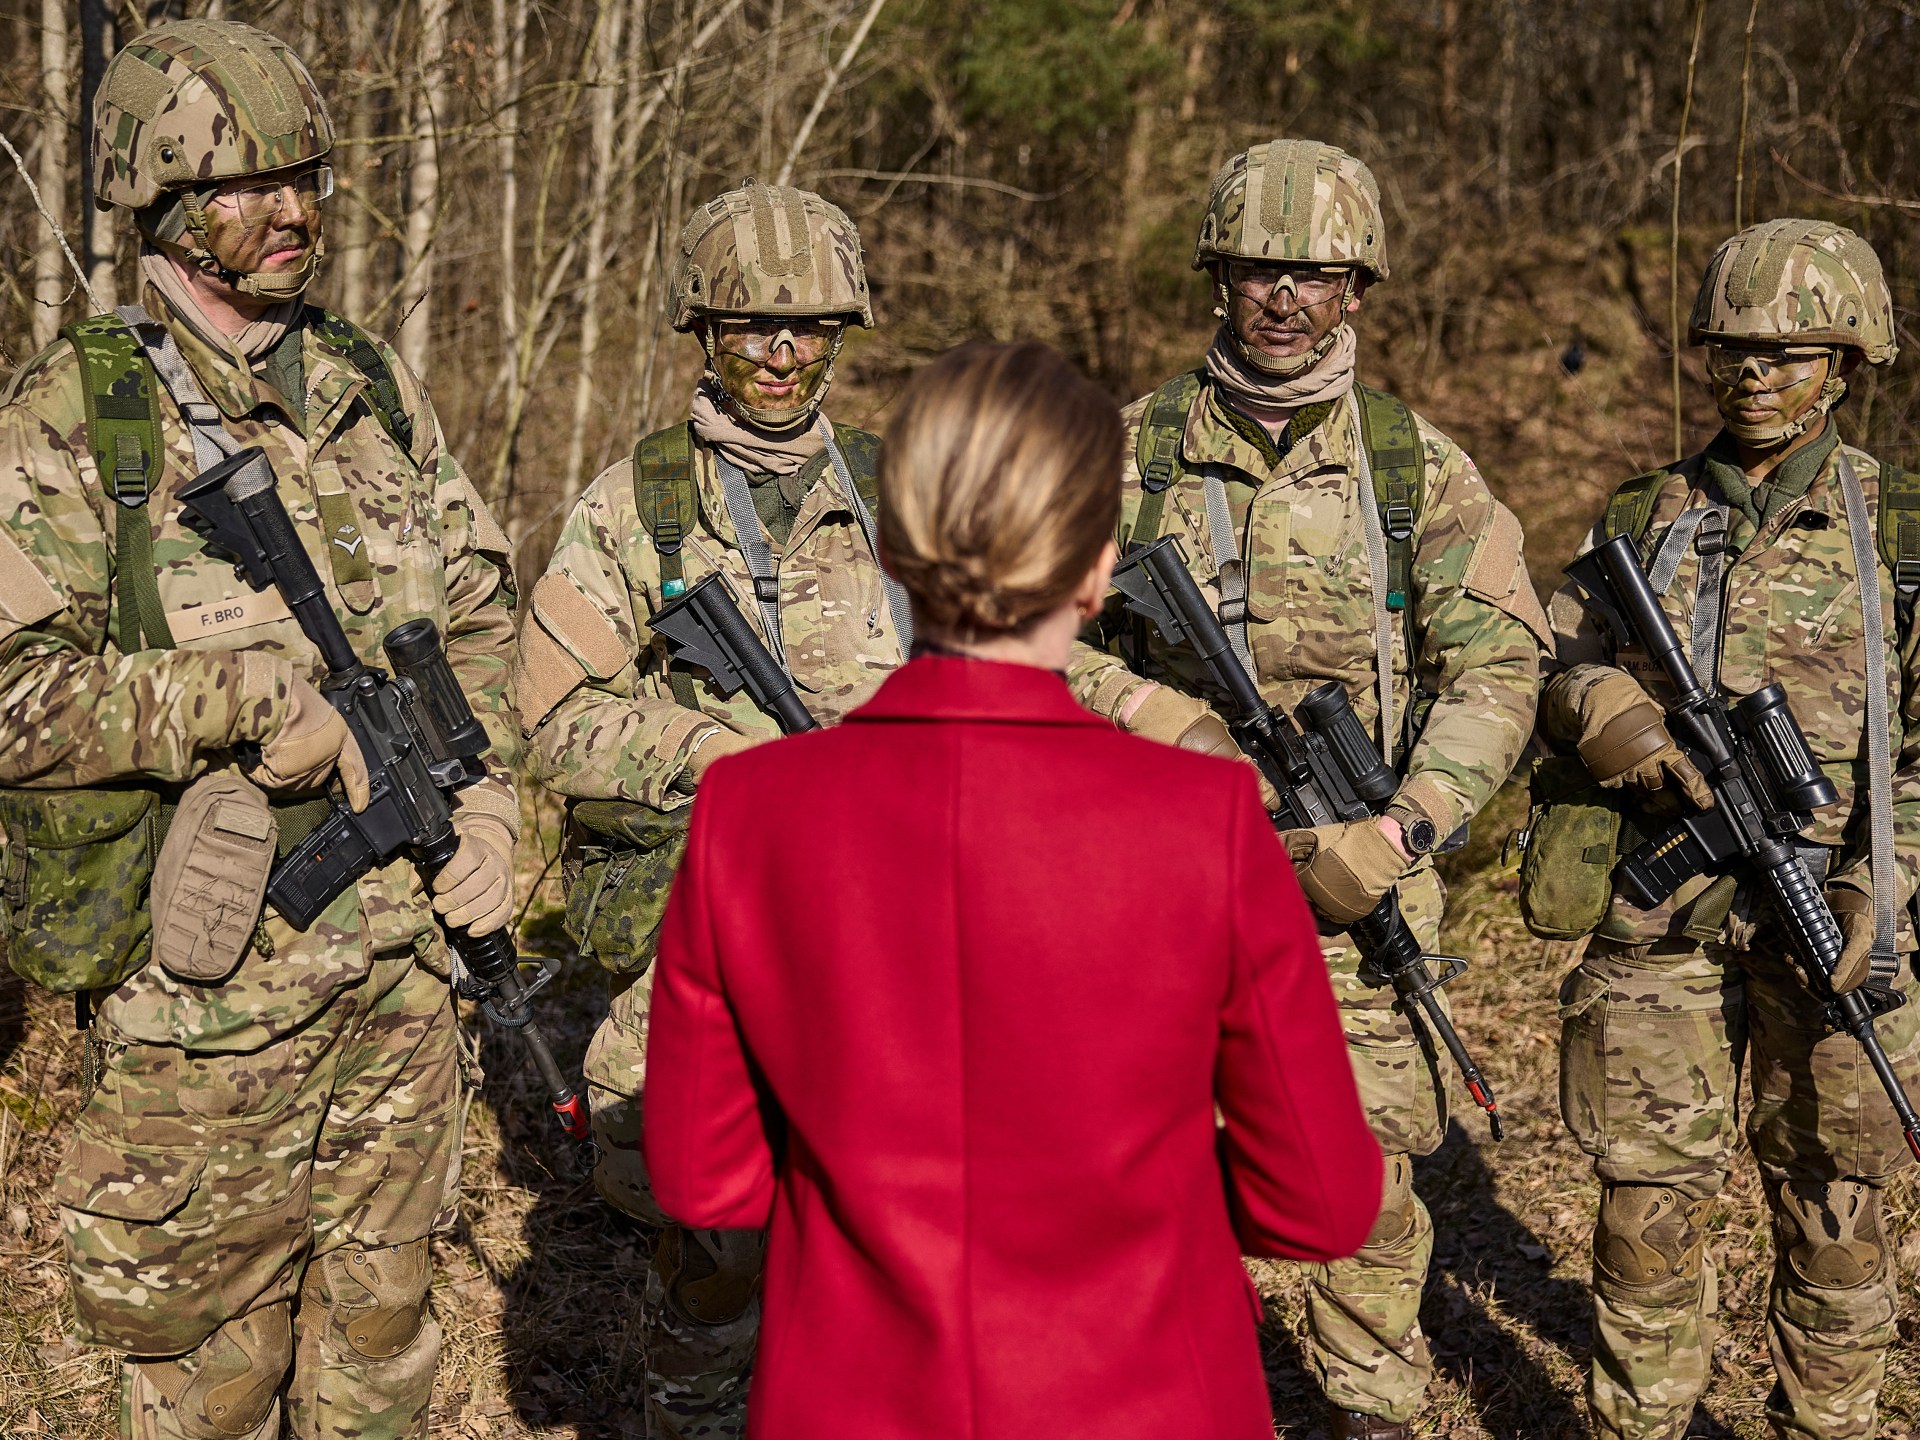 Denemarken rekruteert voor het eerst vrouwen in de strijdkrachten |  Militair nieuws